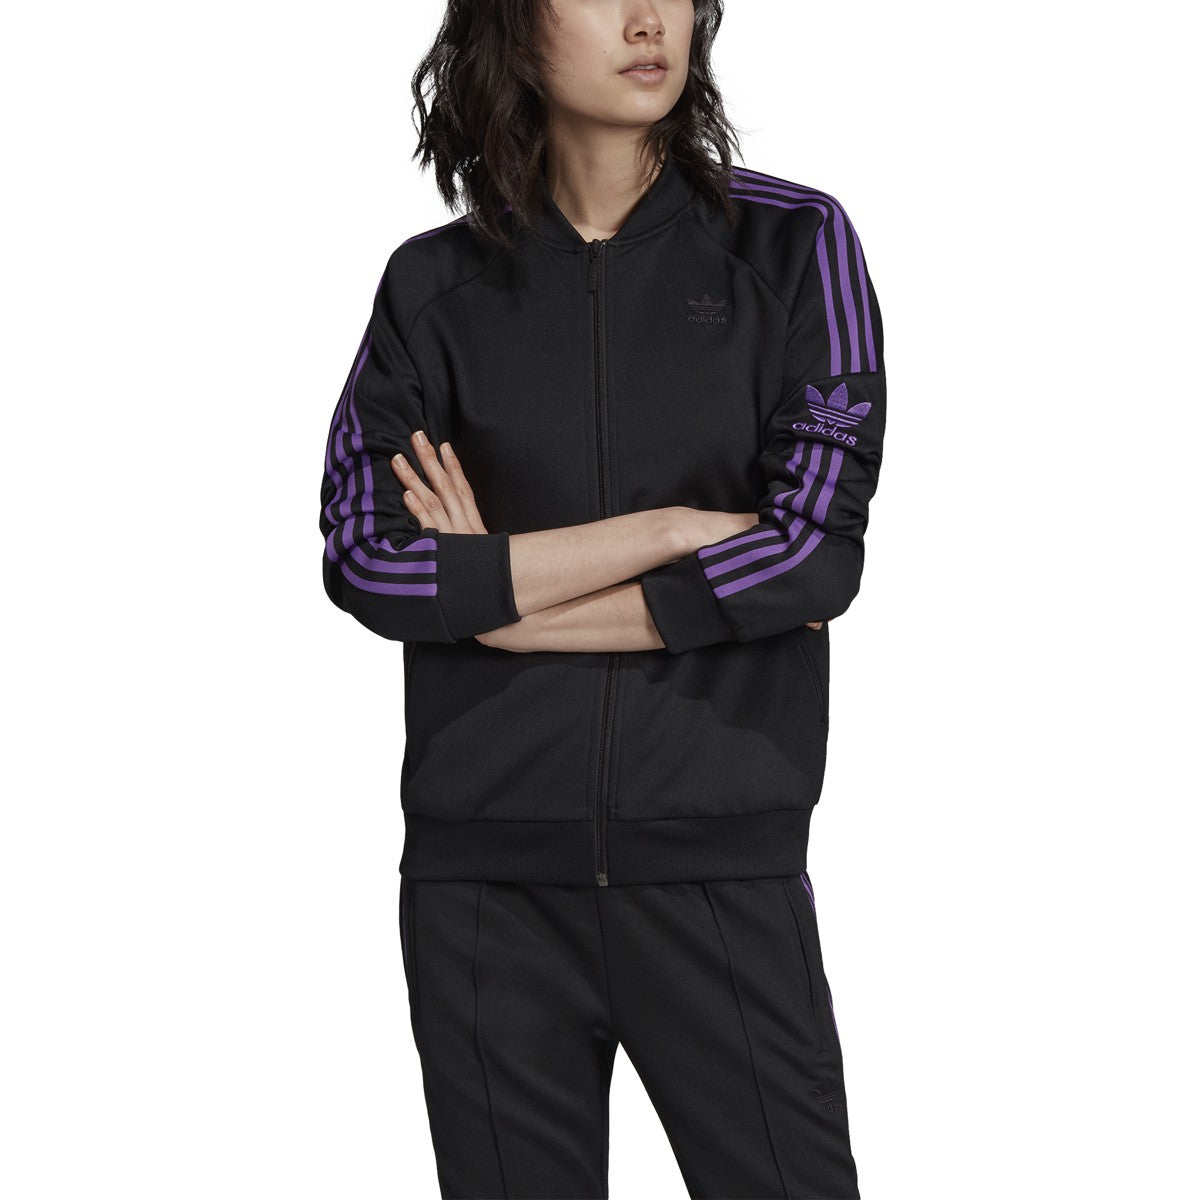 Voorstel Elke week liefde Adidas Originals Superstar Womens Track Jacket Black